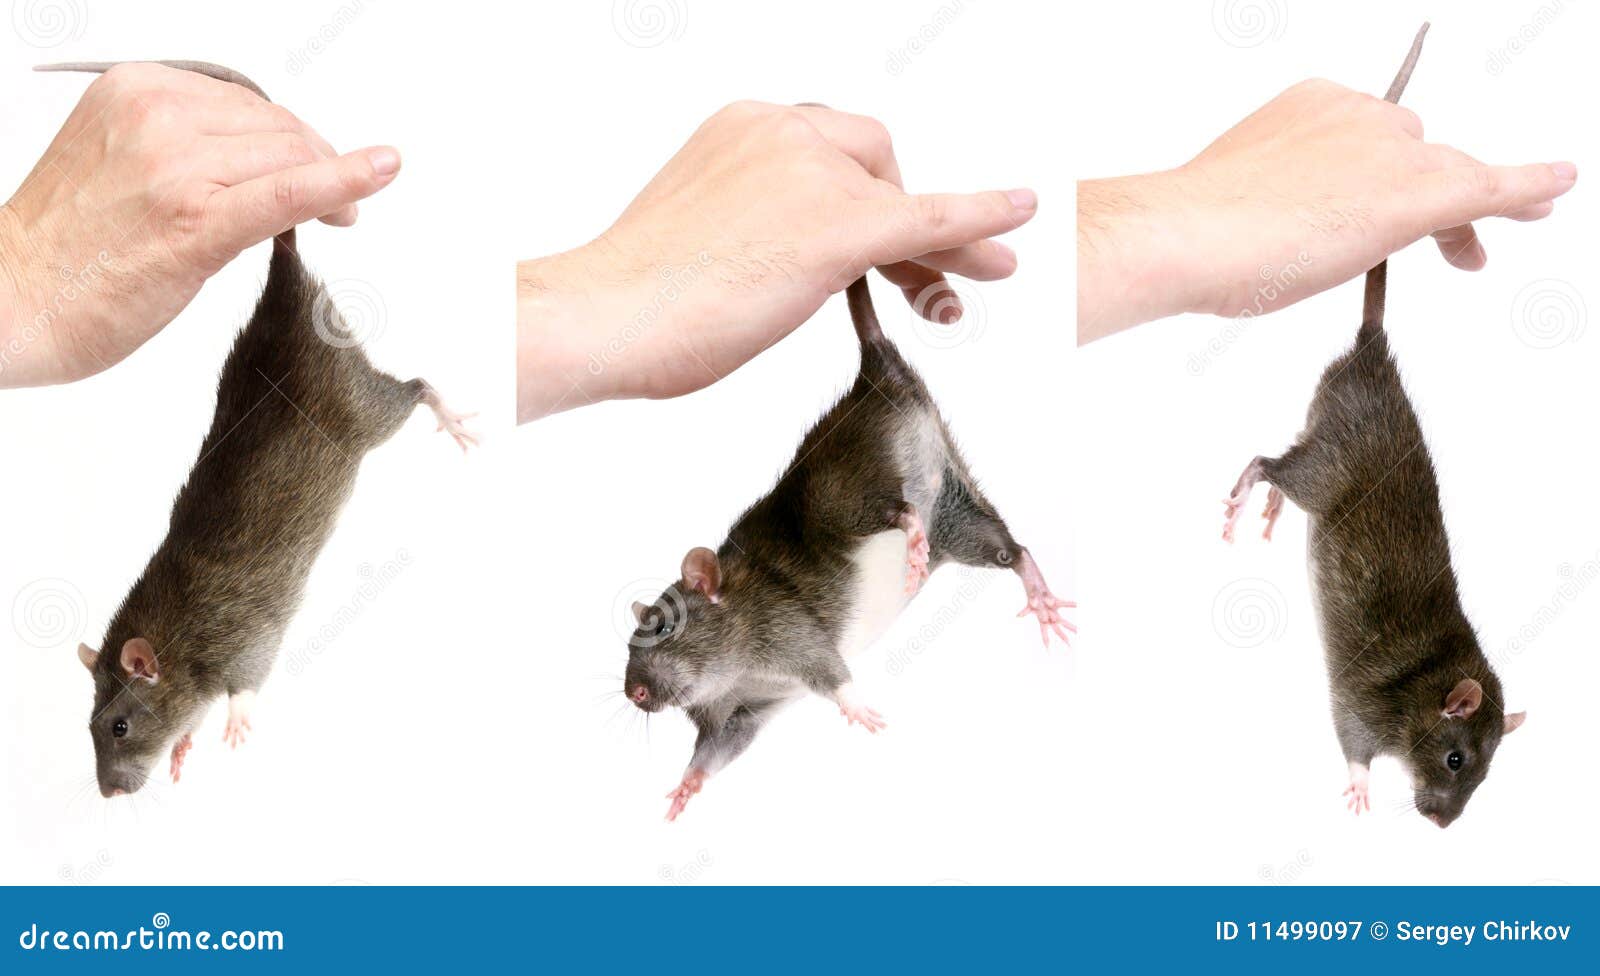 Лапками цепляется хвостиком упирается носом постукивает. Крыса в руке. Мышь в руке. Рука держит крысу за хвост. Мышл за хвост.